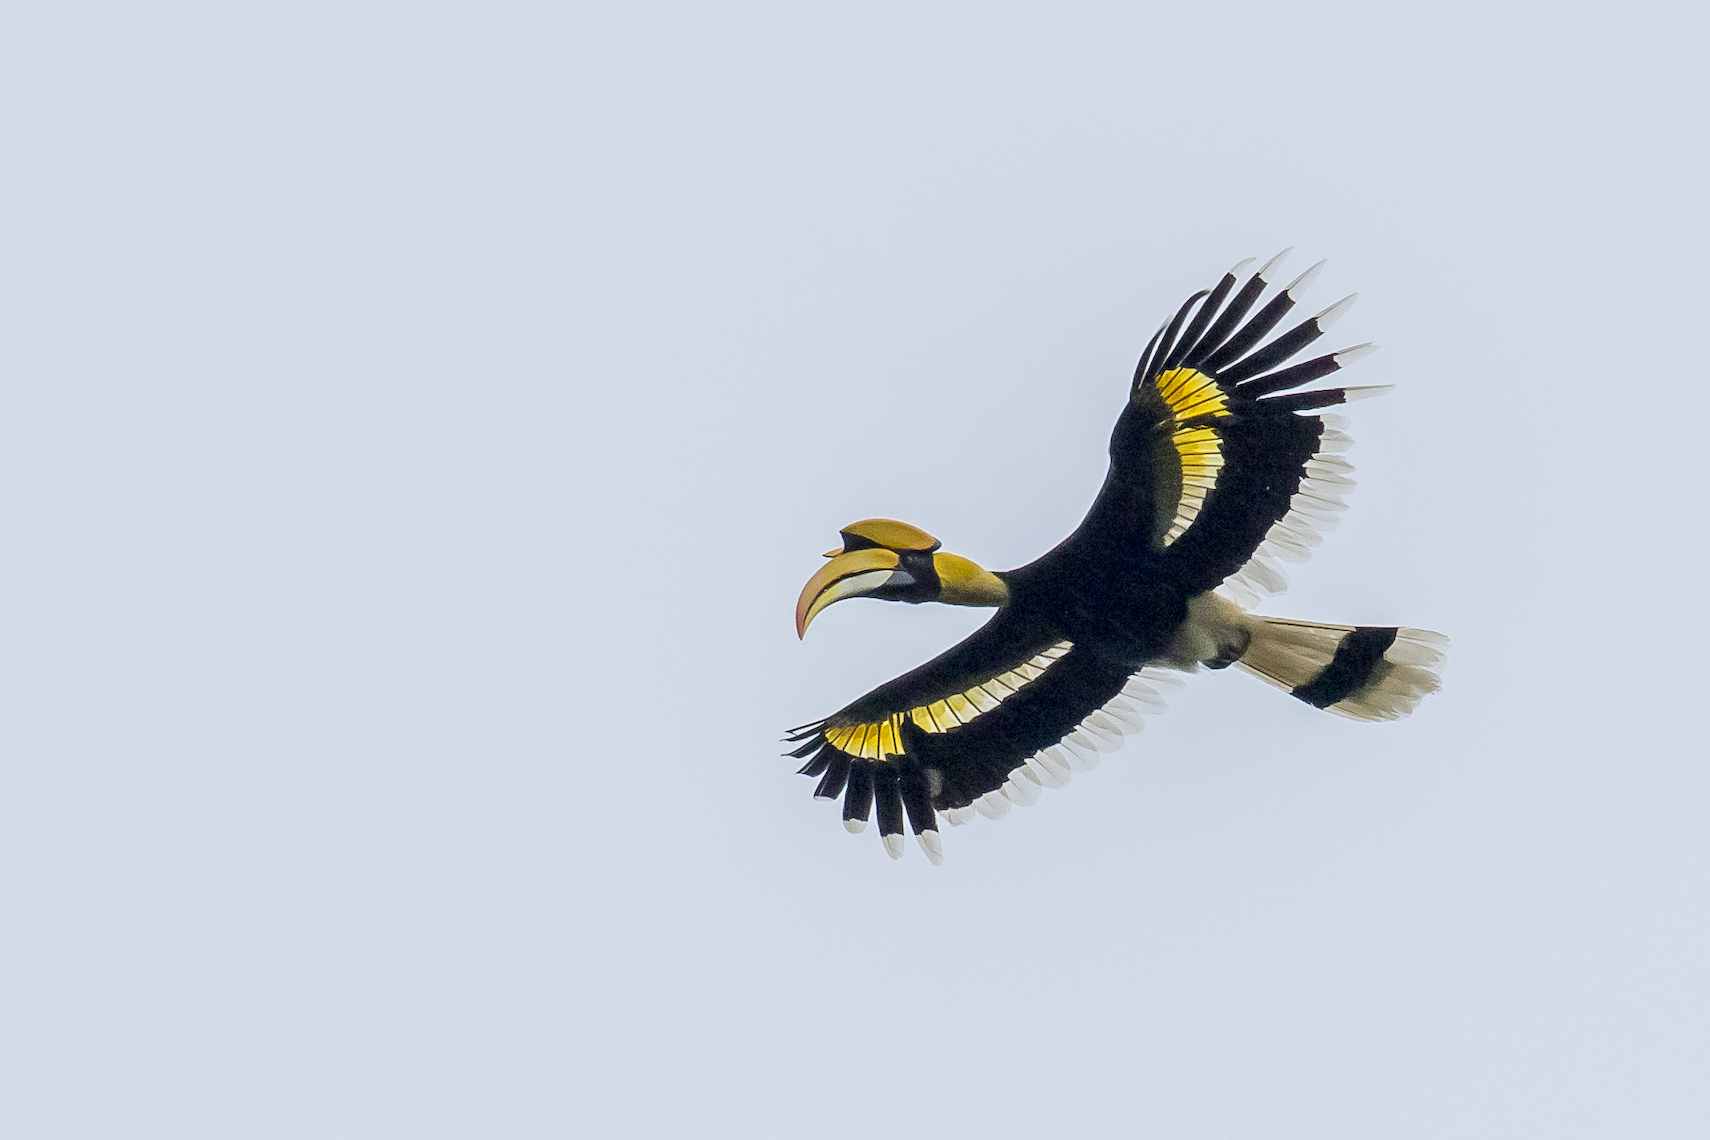 Giant Hornbill flight